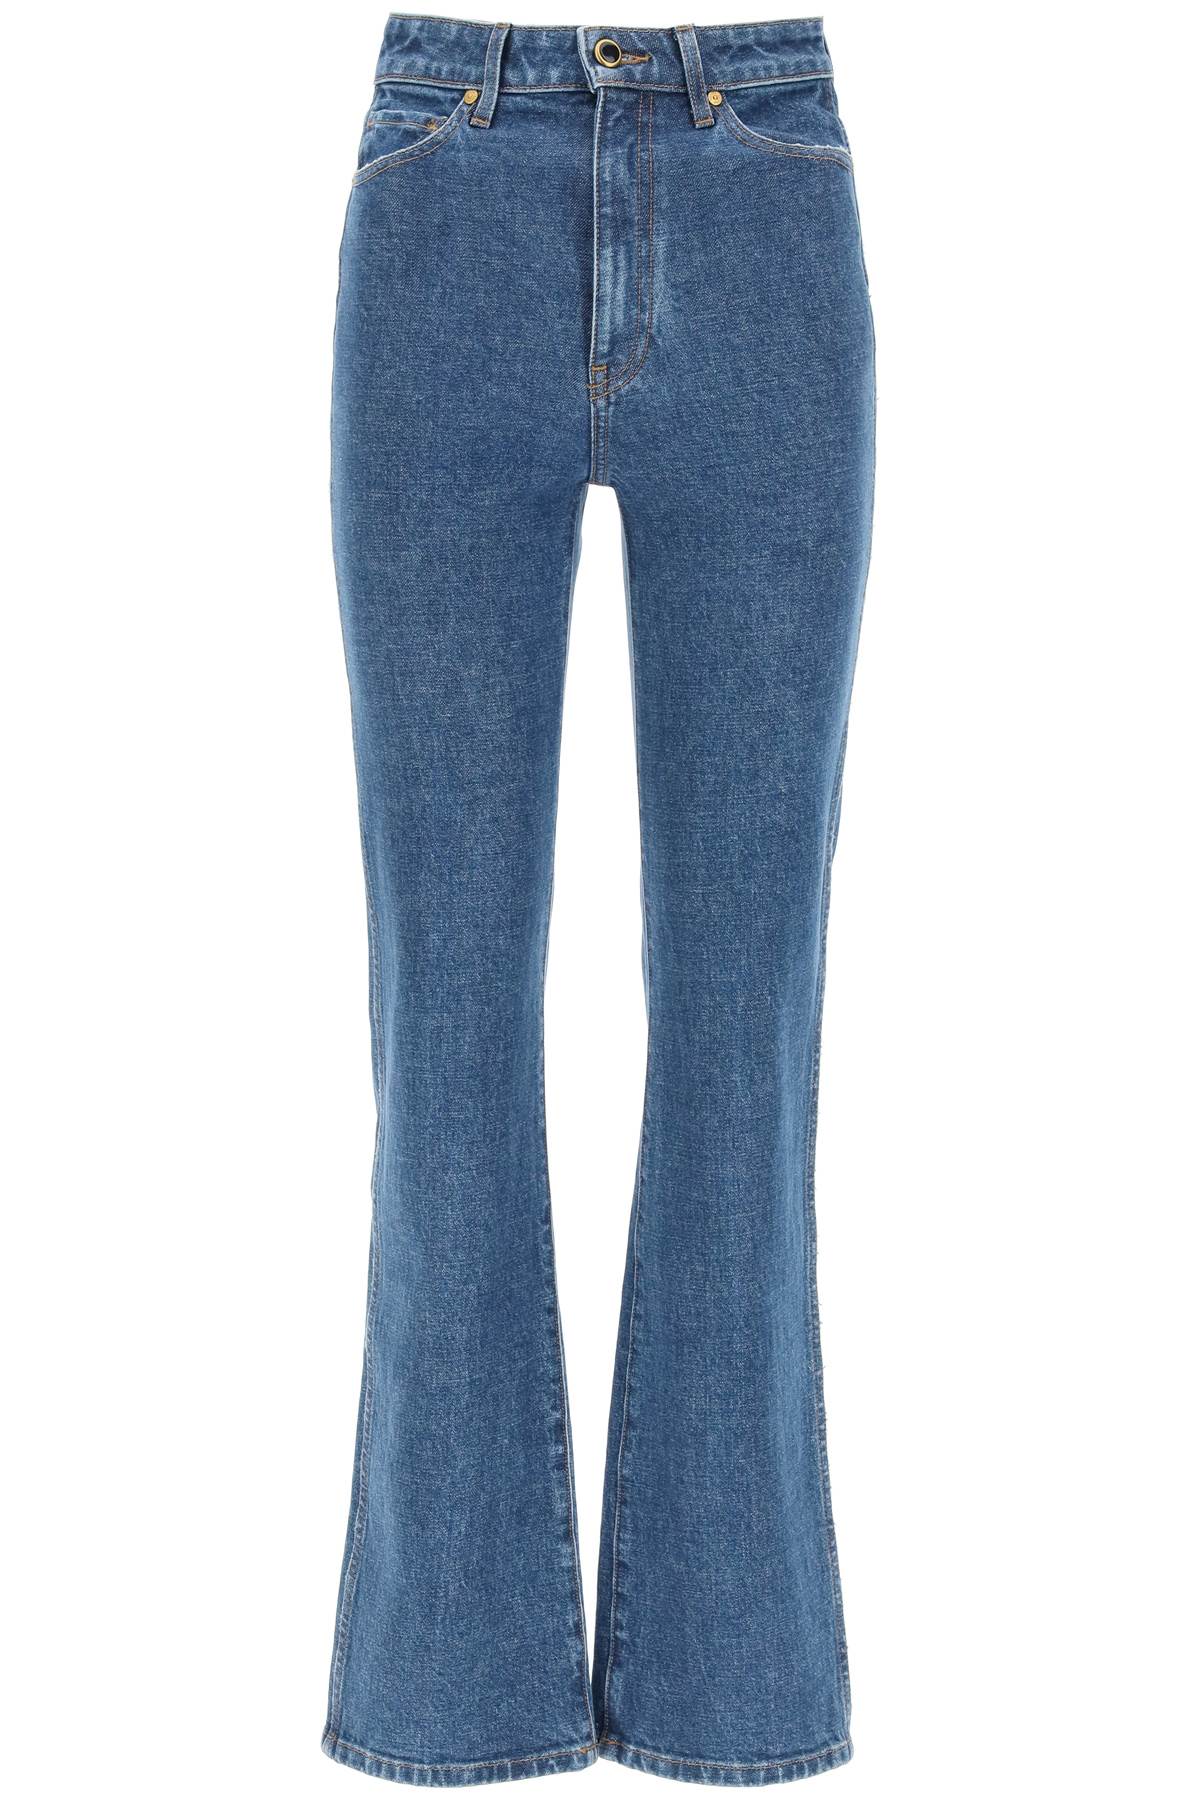 Khaite Danielle High Rise Straight Leg Jeans